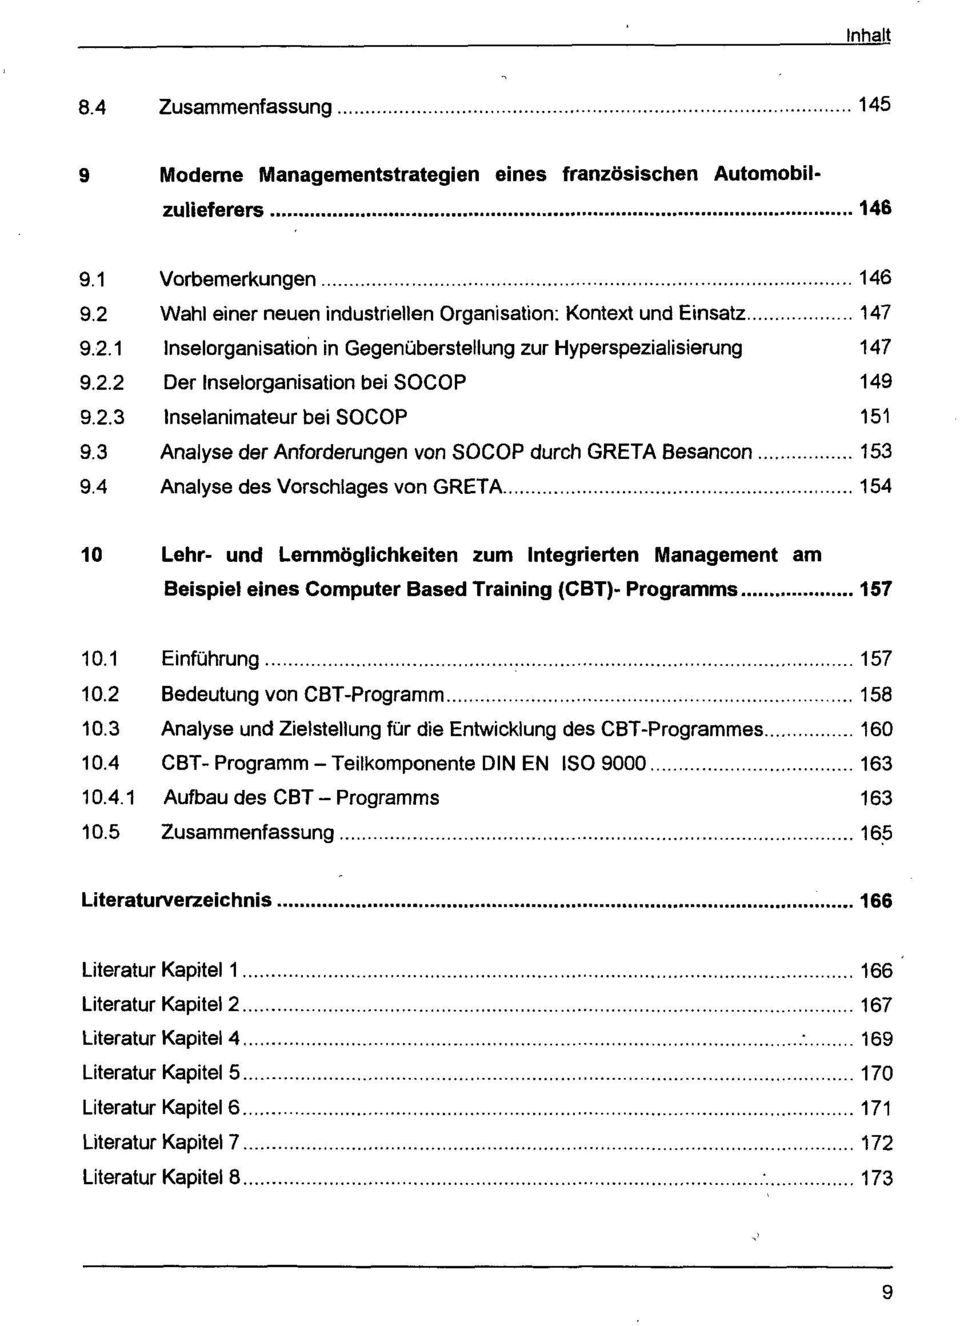 4 Analyse des Vorschlages von GRETA 154 10 Lehr- und Lernmöglichkeiten zum Integrierten Management am Beispiel eines Computer Based Training (CBT)- Programms 157 10.1 Einführung 157 10.